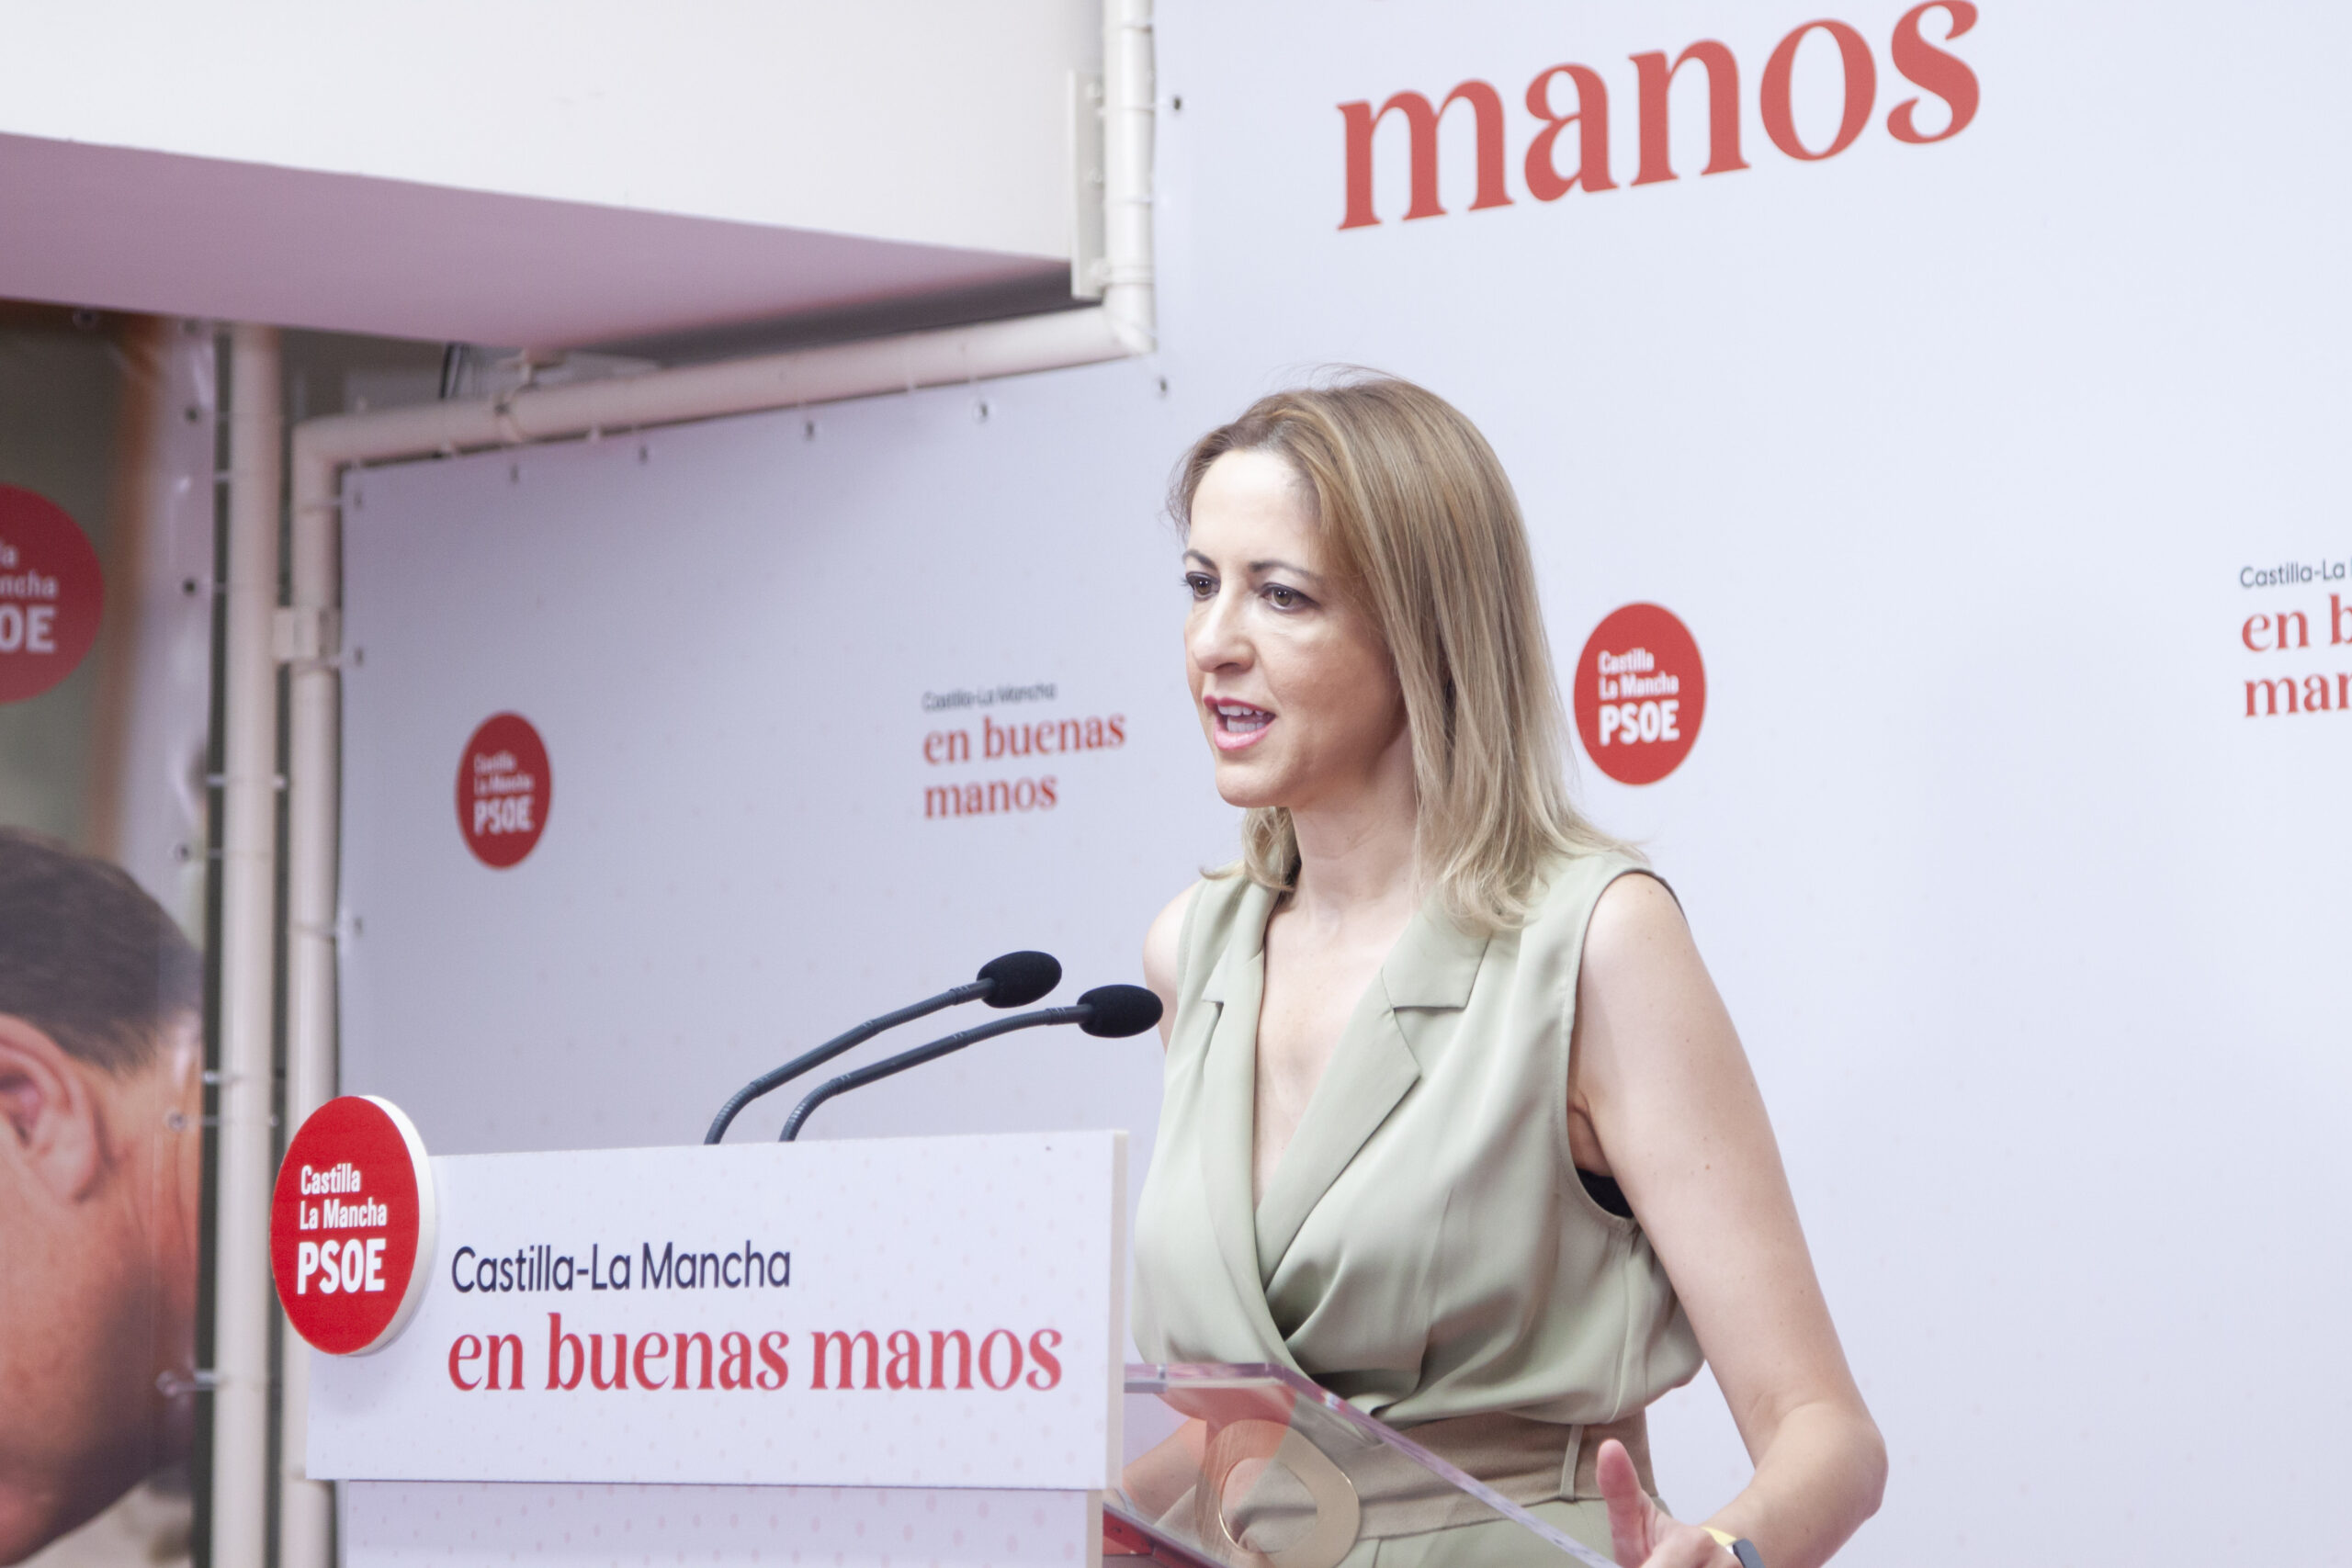 Maestre pide votar al PSOE con “contundencia” y “humildad” para seguir avanzando frente al mensaje de “odio y desprecio” del PP y Vox